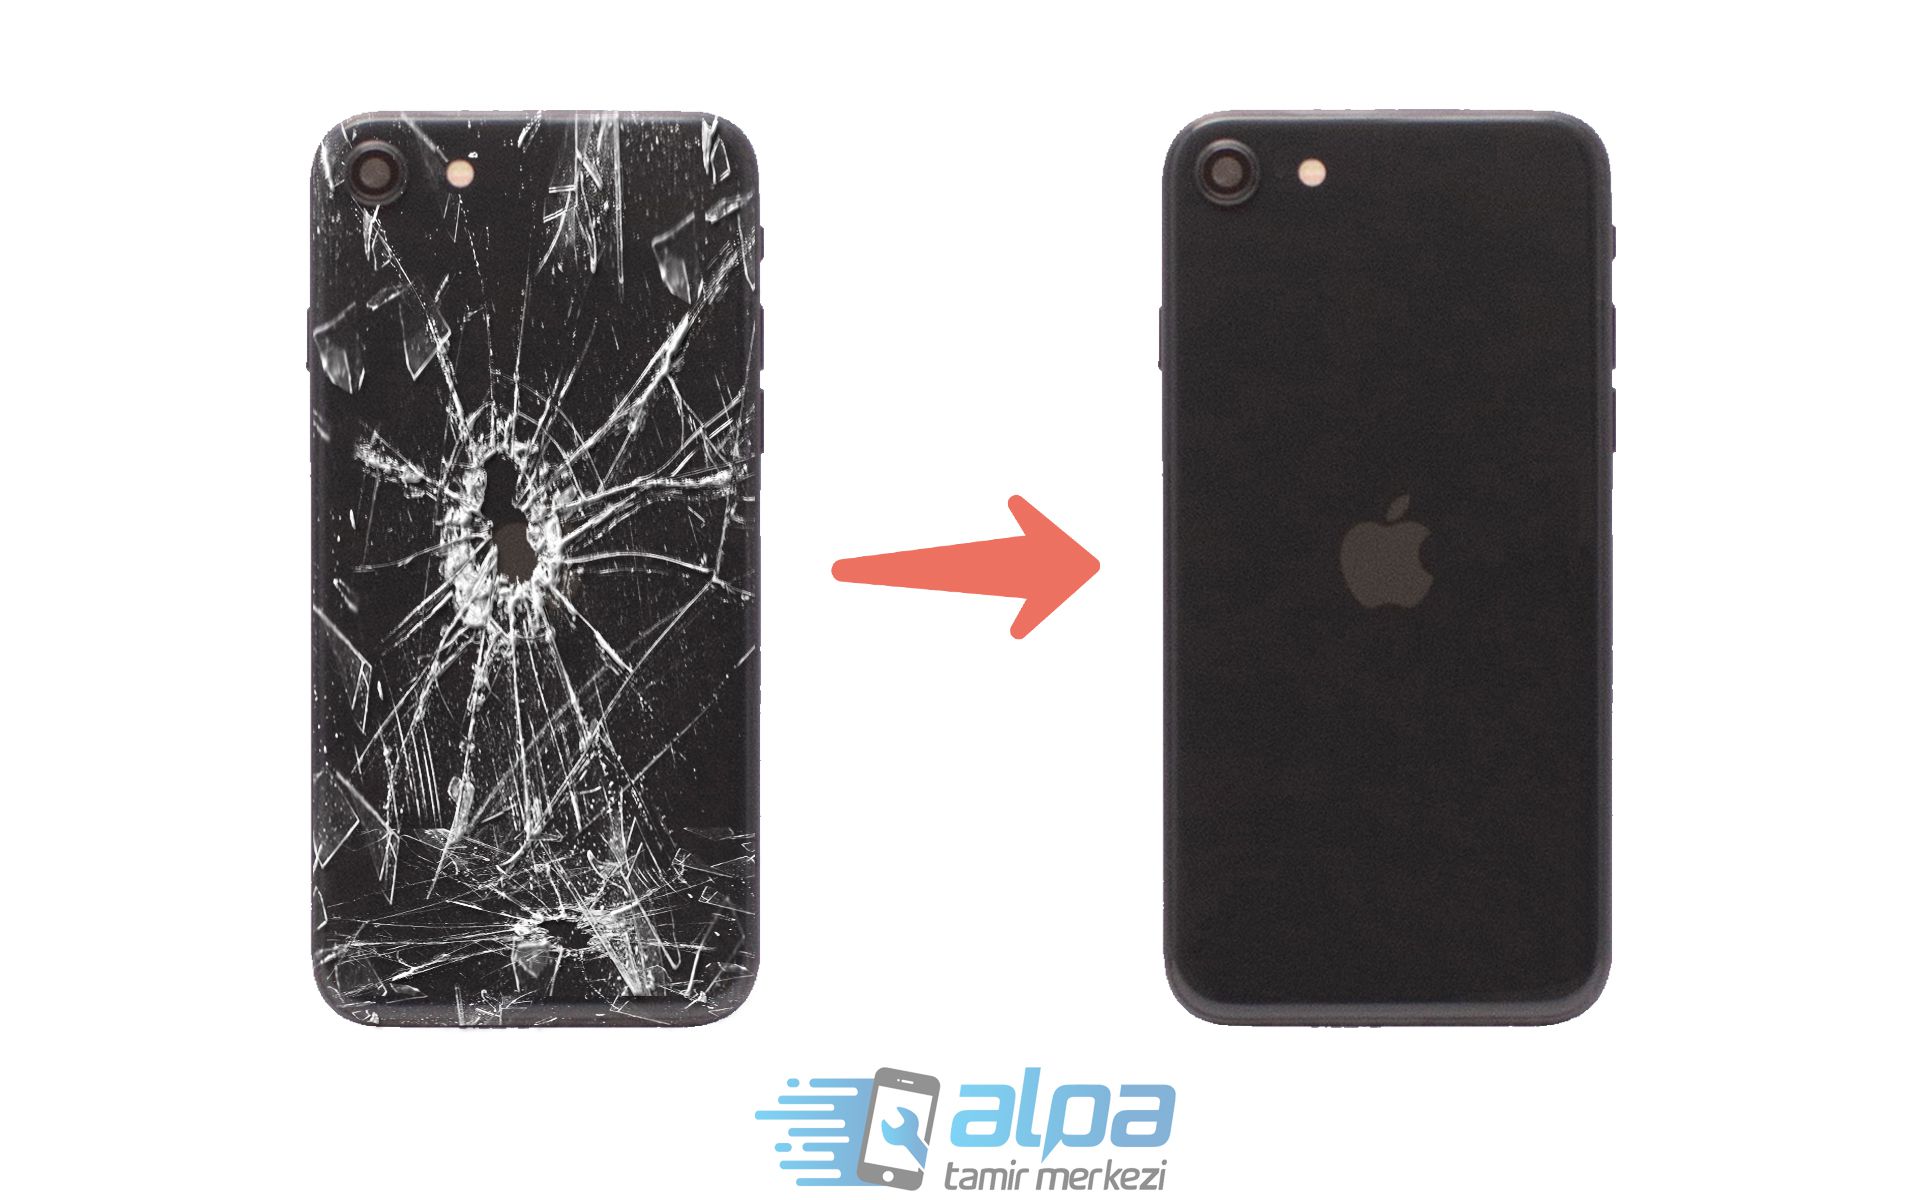 iPhone SE 2 (2020) Arka Cam Değişimi Fiyatı 849 TL